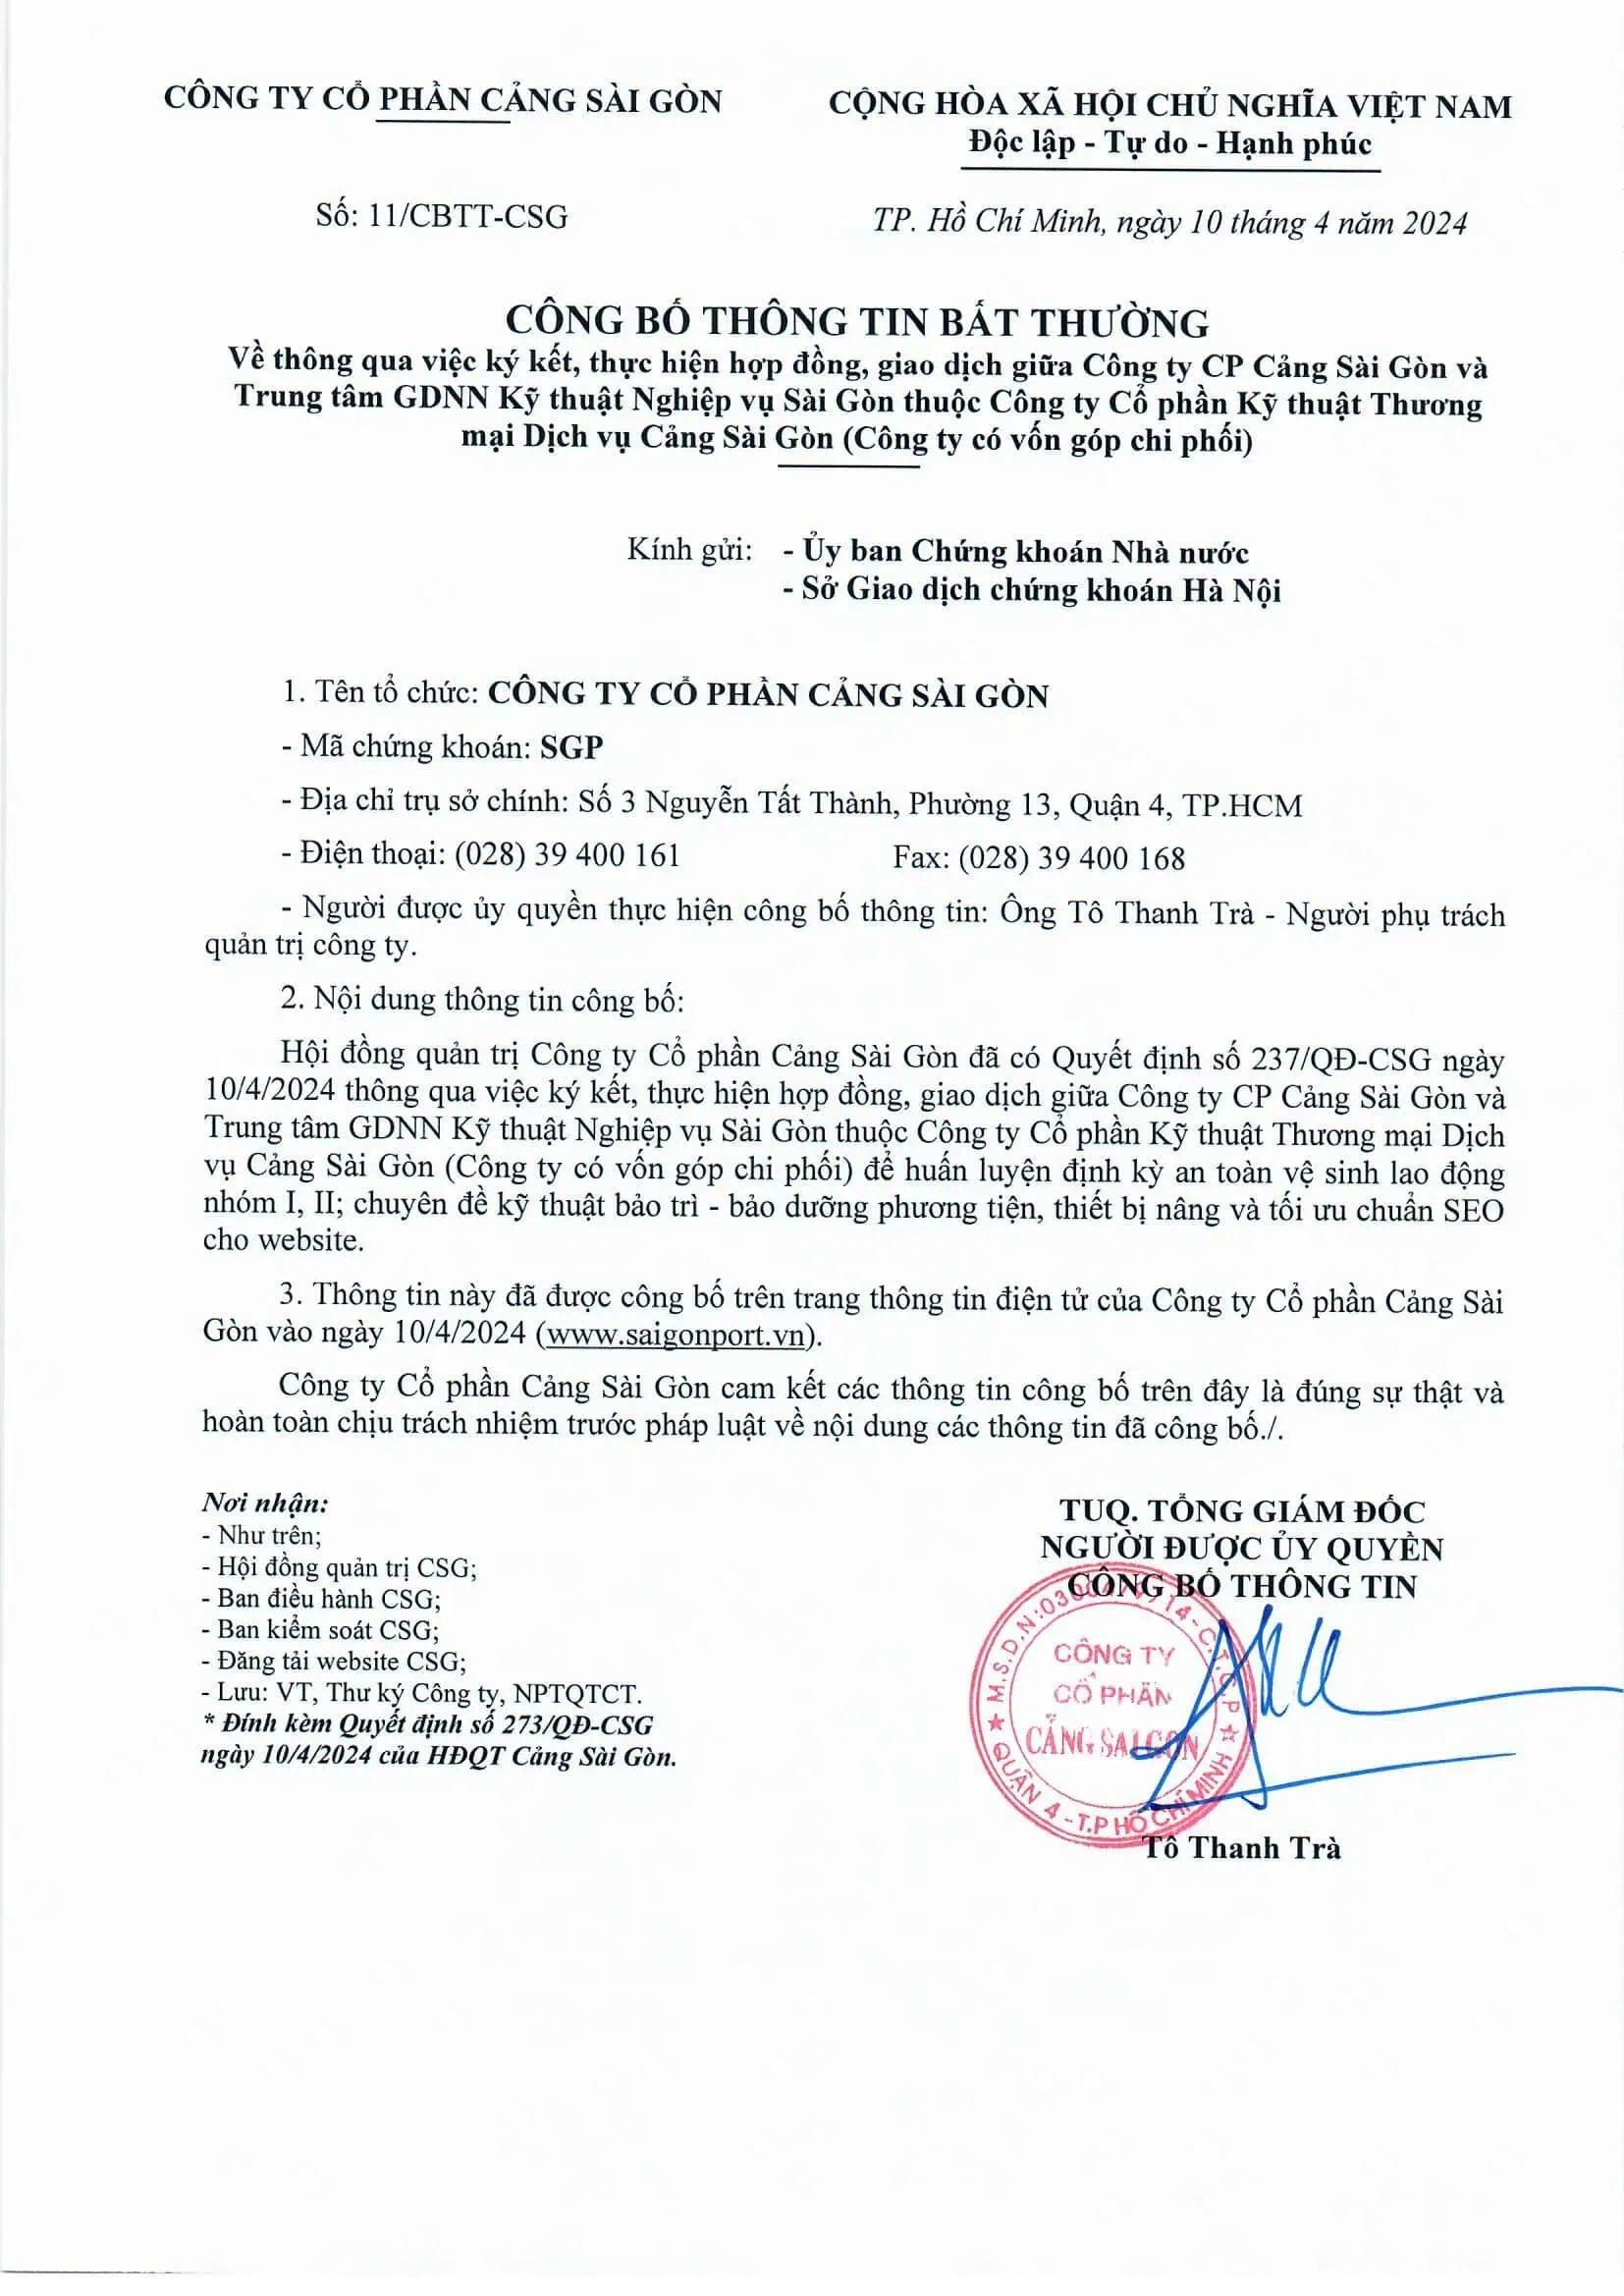 Công bố thông tin về thông qua ký kết, thực hiện hợp đồng, giao dịch giữa Công ty CP Cảng Sài Gòn và Trung tâm GDNN Kỹ thuật Nghiệp vụ Sài Gòn thuộc Công ty Kỹ thuật Thương mại Dịch vụ Cảng Sài Gòn (Công ty có vốn góp chi phối)